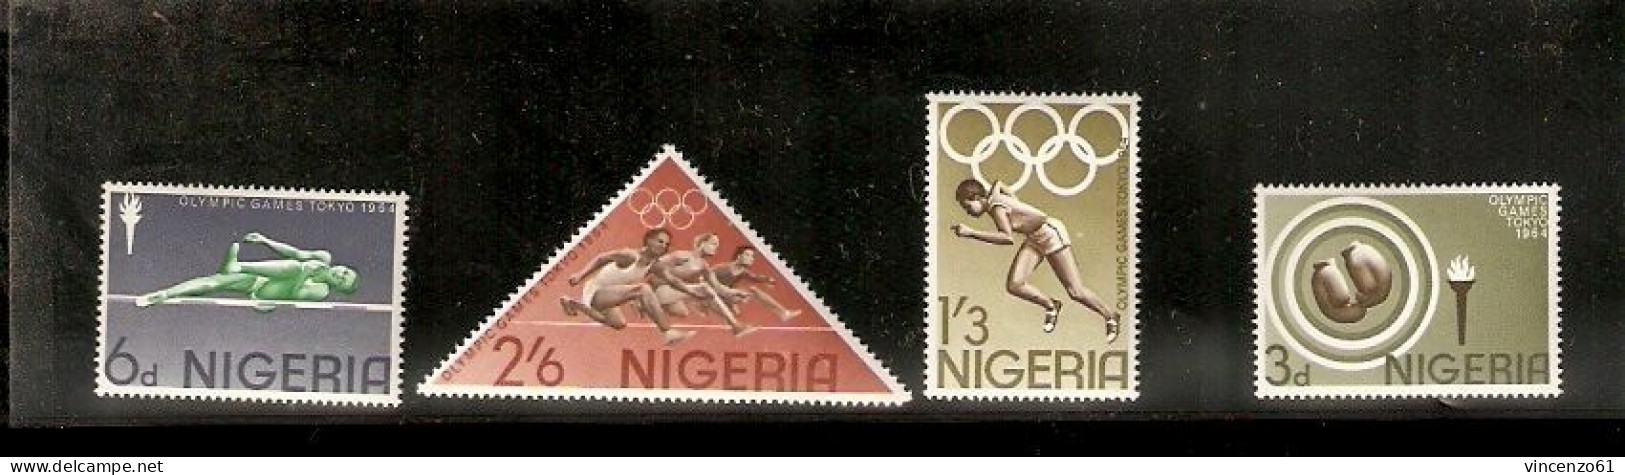 NIGERIA COMPLETE SERIE TOKIO 1964 OLIMPIC GAMES - Estate 1964: Tokio